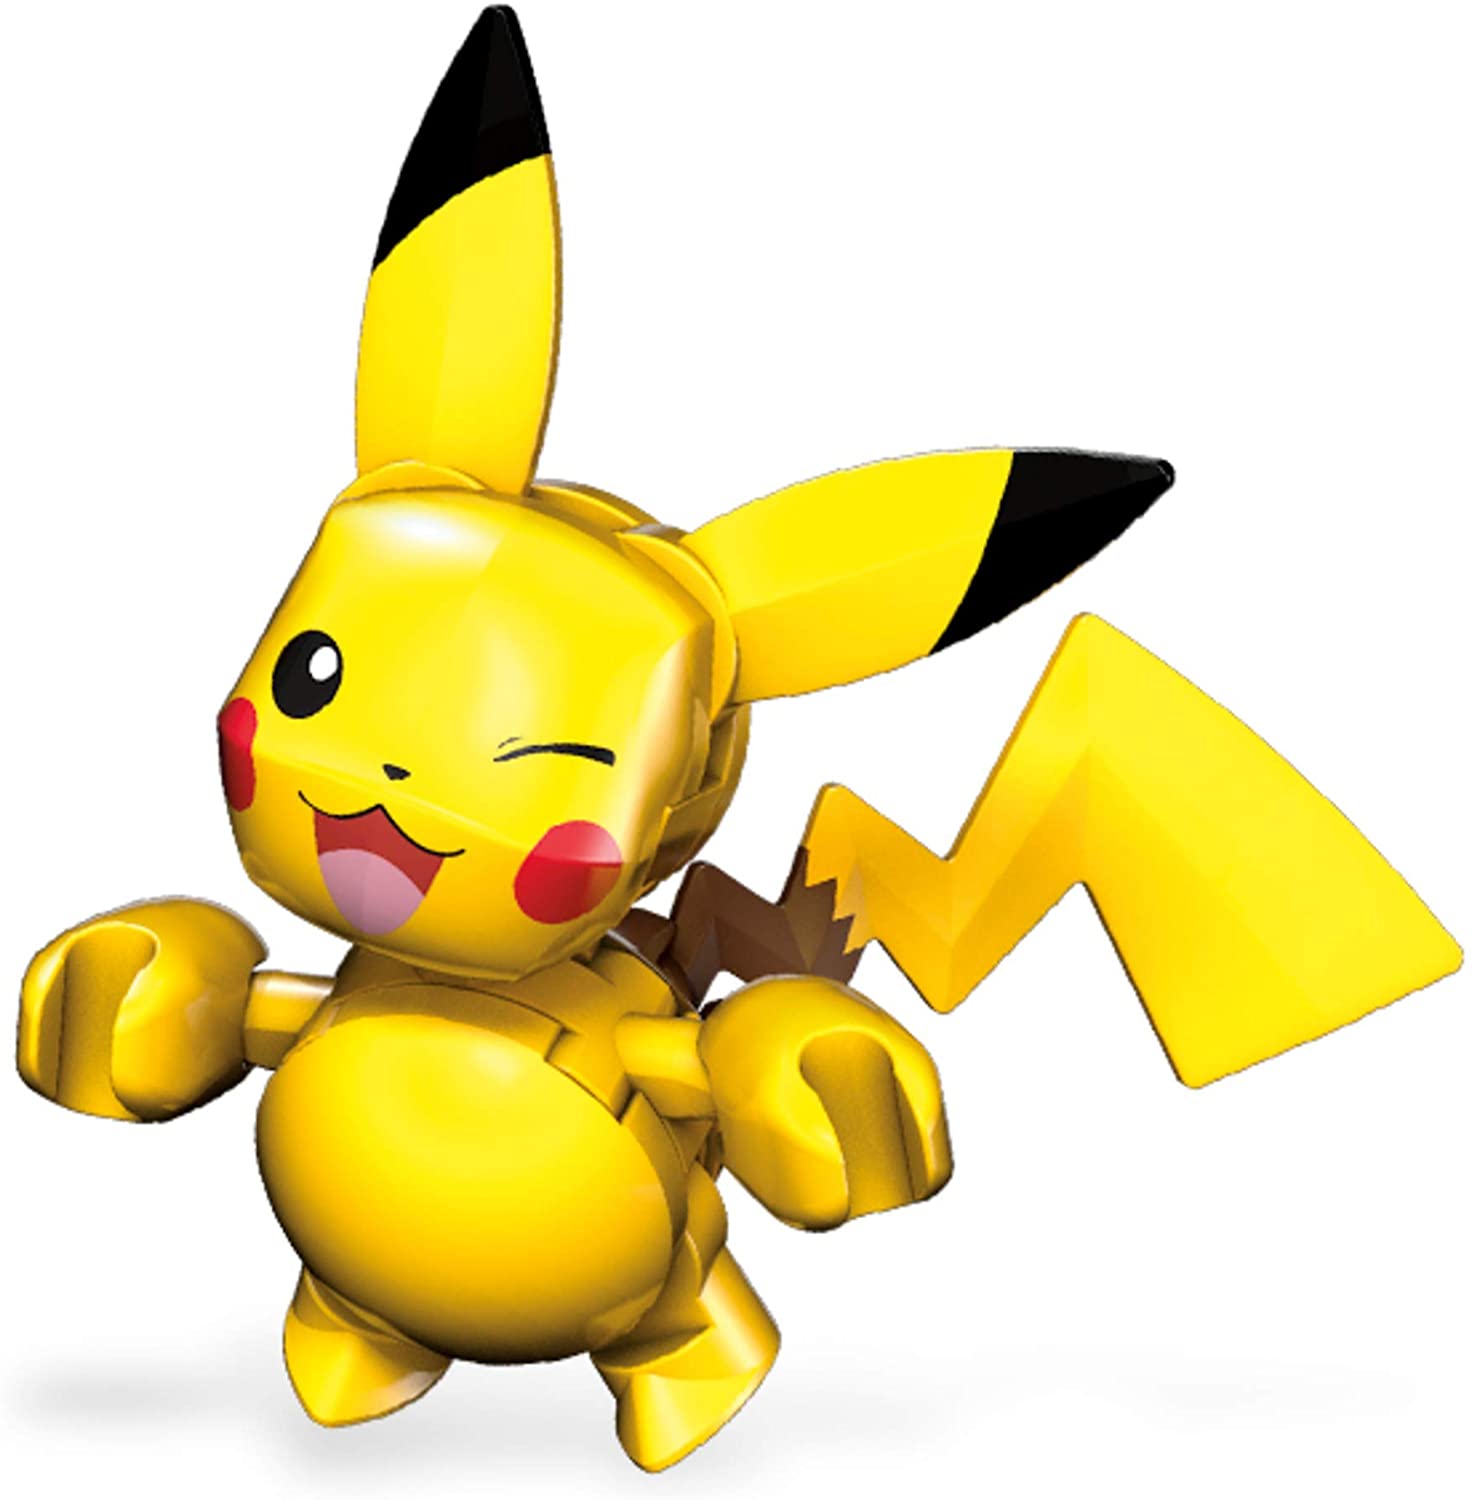 Mega Construx Pokemon Buildable Pikachu Figure & Poke Ball